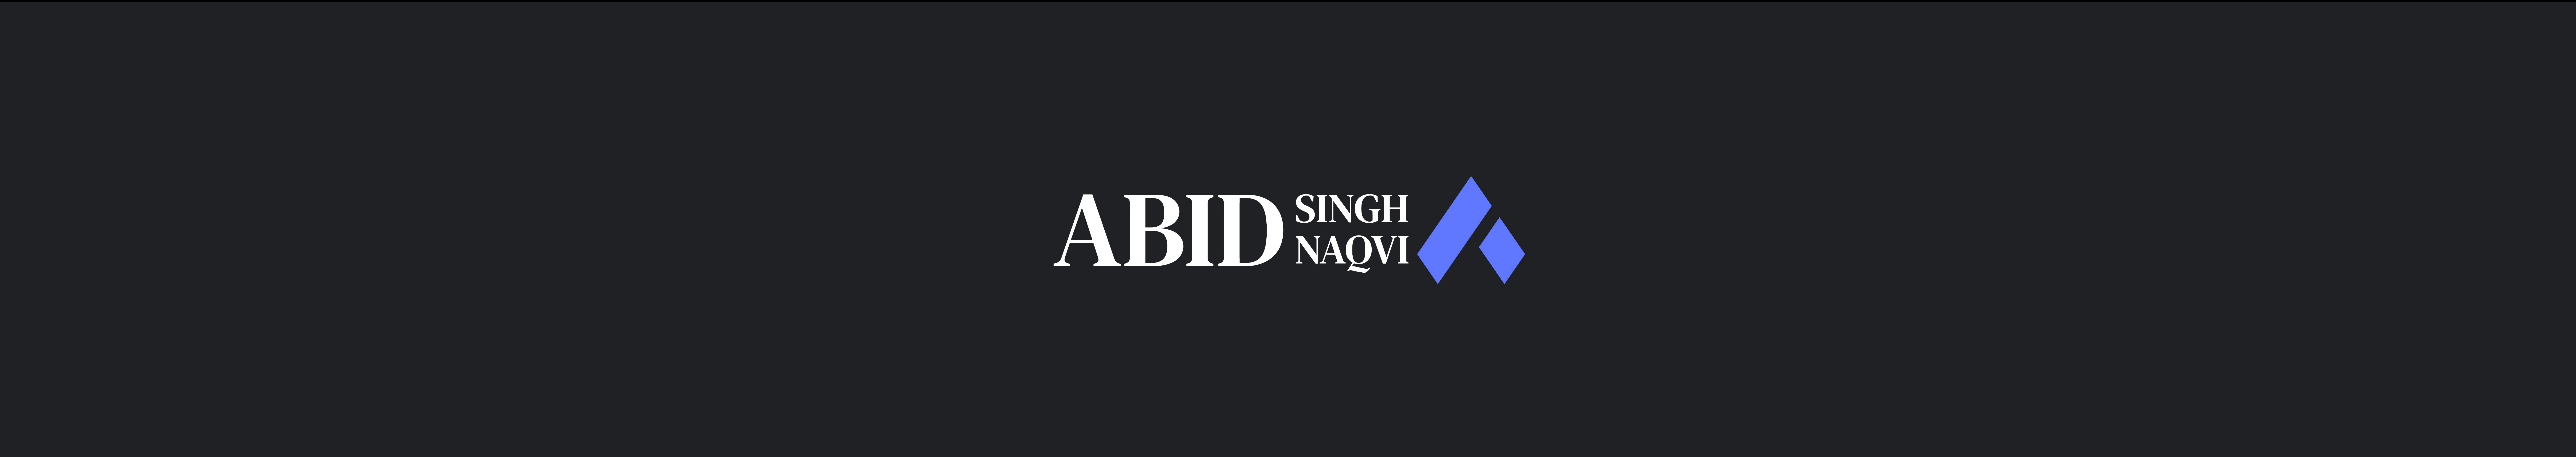 Abid Naqvi's profile banner